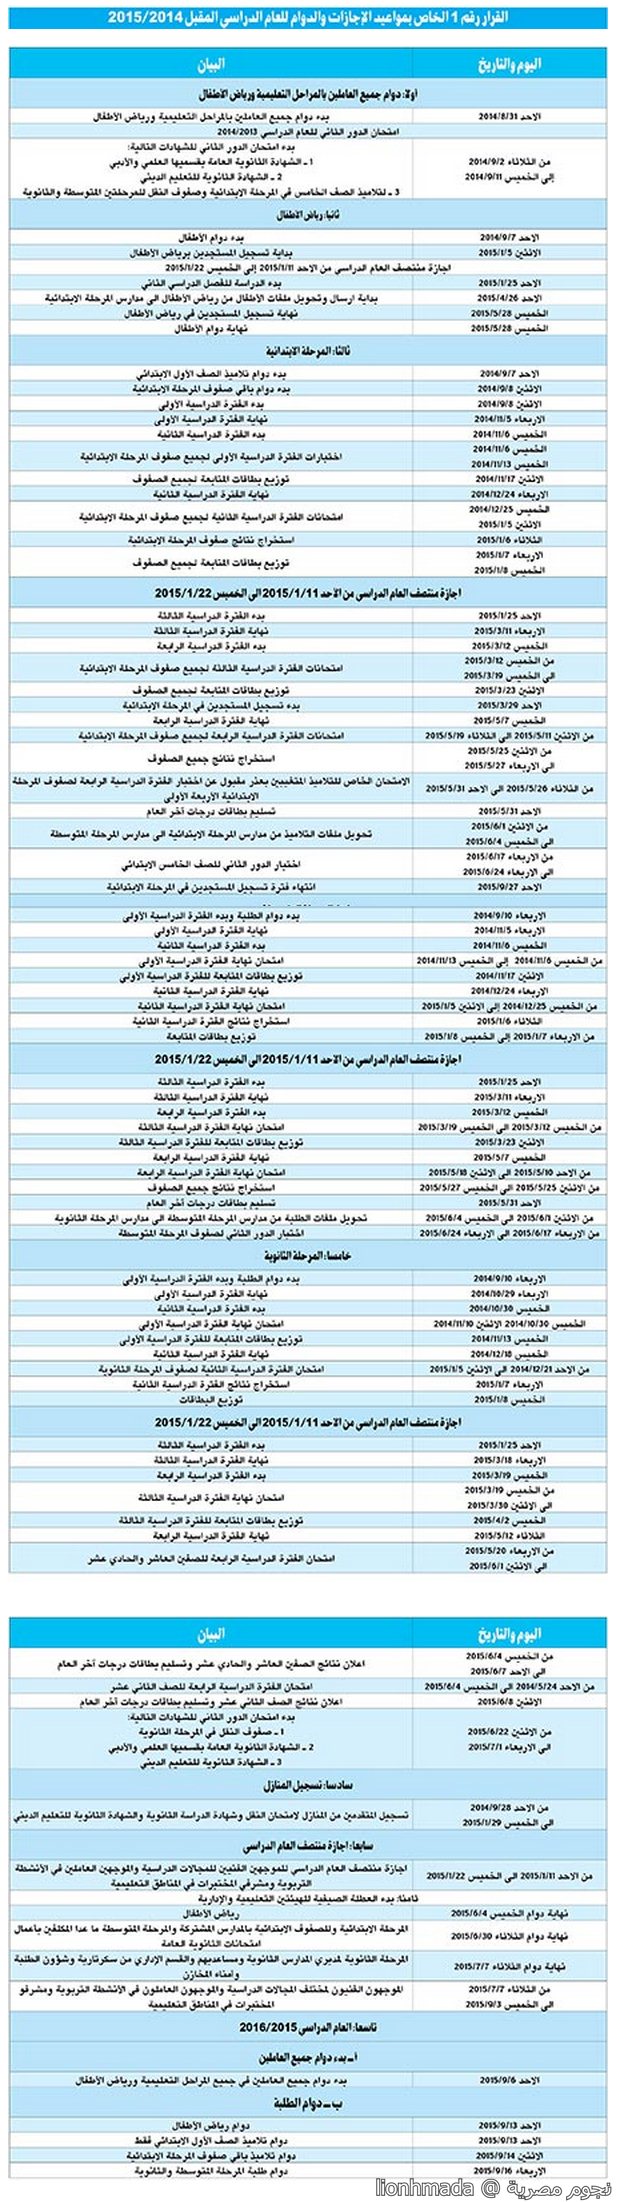 التقويم الدراسي في الكويت مع الاجازات 2014/2015